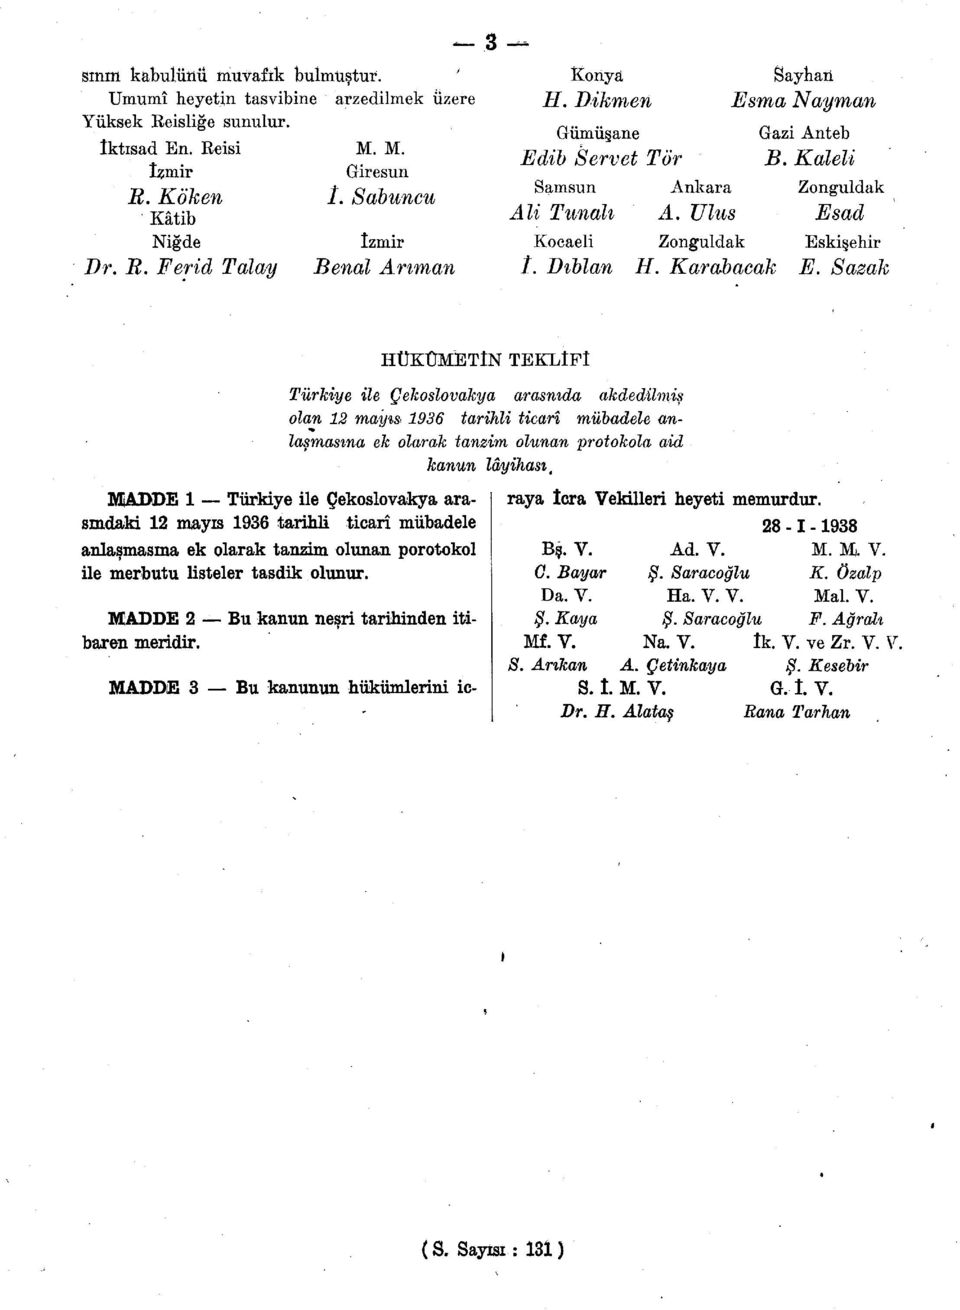 Karabacak E. Sazak MADDE 1 Türkiye ile Çekoslovakya arasındaki 12 mayıs 1936 tarihli ticarî mübadele anlaşmasına ek olarak tanzim olunan porotokol ile merbutu listeler tasdik olunur.